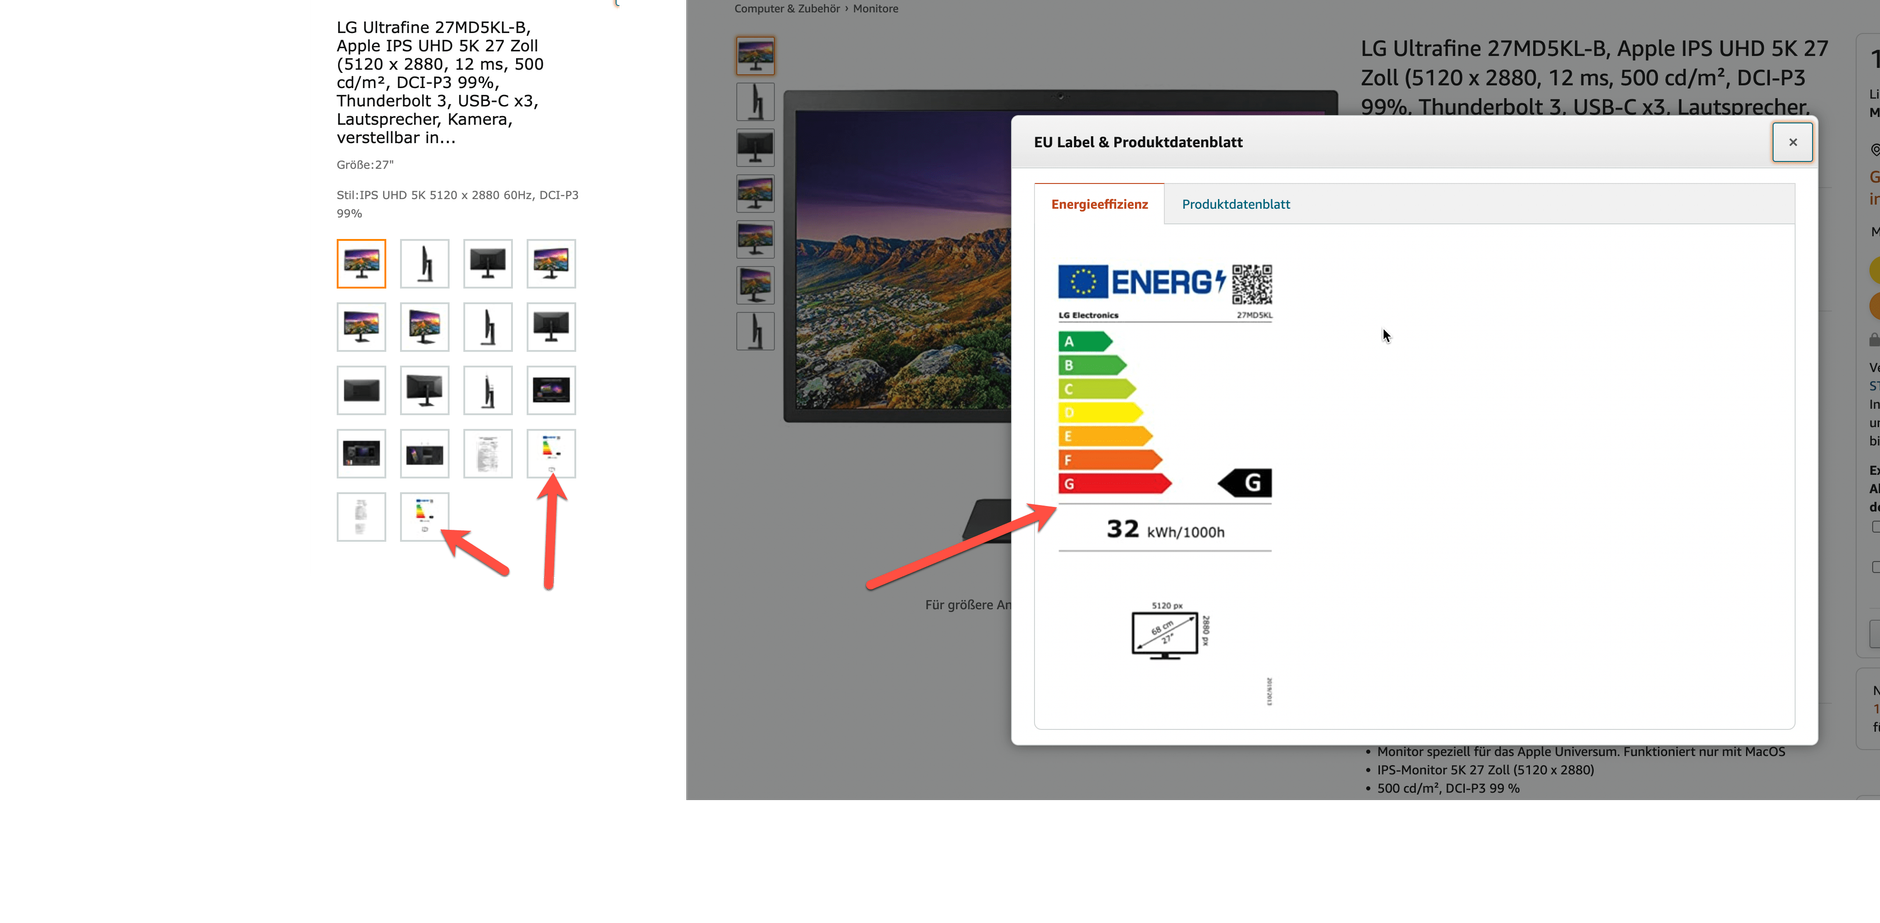 Energie-Effizienz-Label im Produktdatenblatt und in der Gesamtübersicht der Bilder